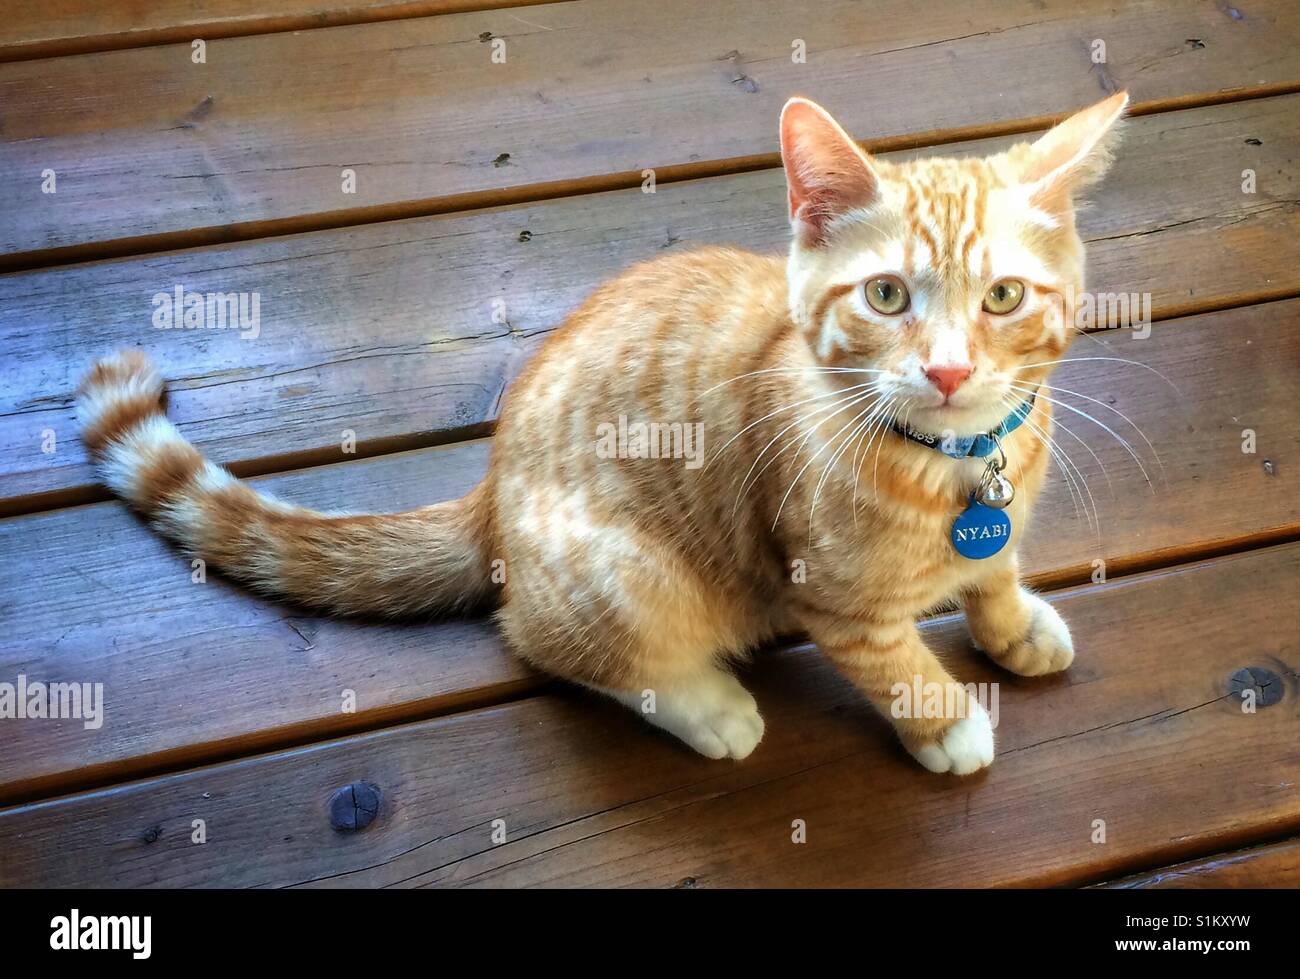 Ginger tabby kitten on a wood floor. Stock Photo